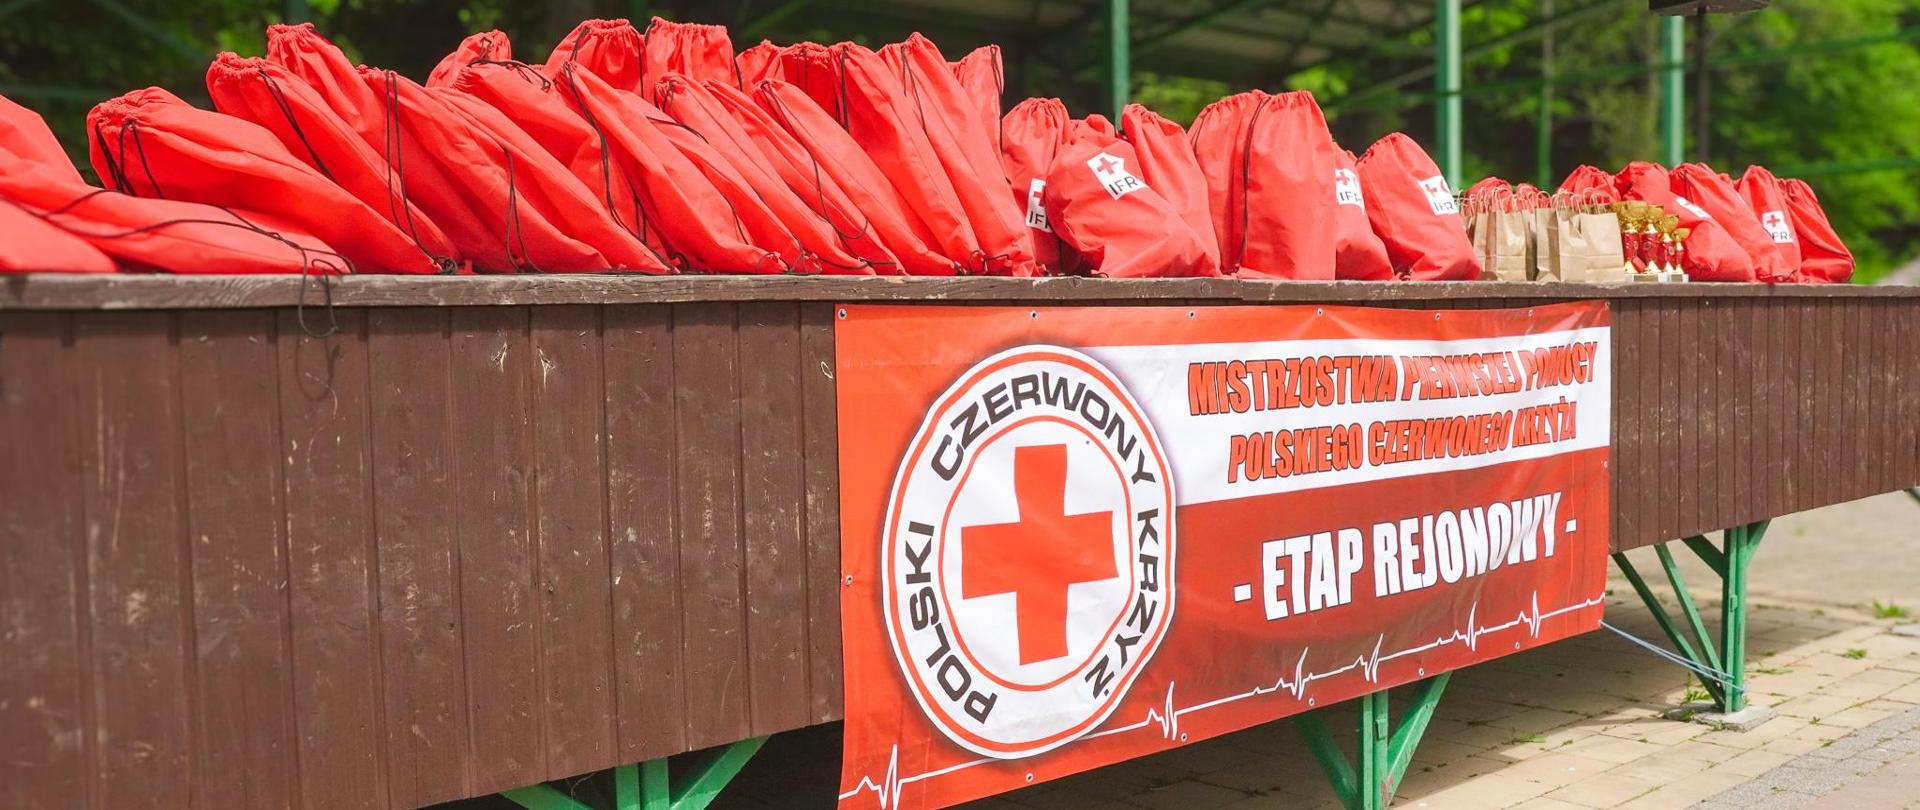 Mistrzostwa Pierwszej Pomocy Polskiego Czerwonego Krzyża 